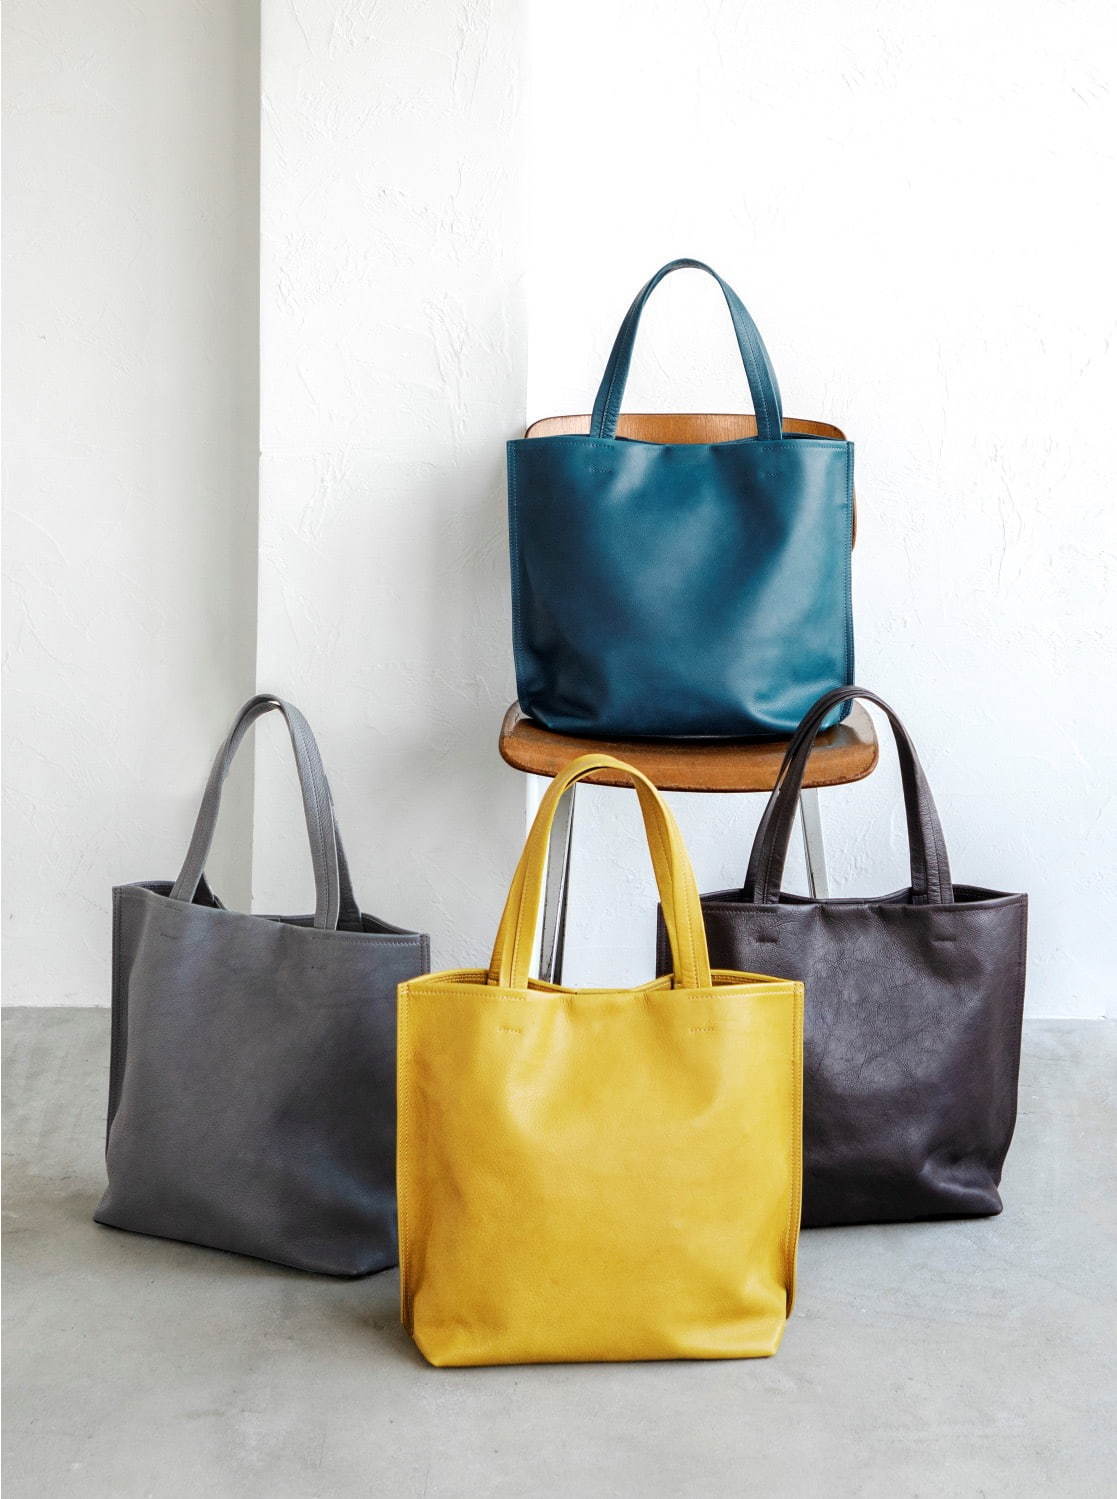 土屋鞄製造所“夕暮れの海”カラーのレザートートバッグ「カラー